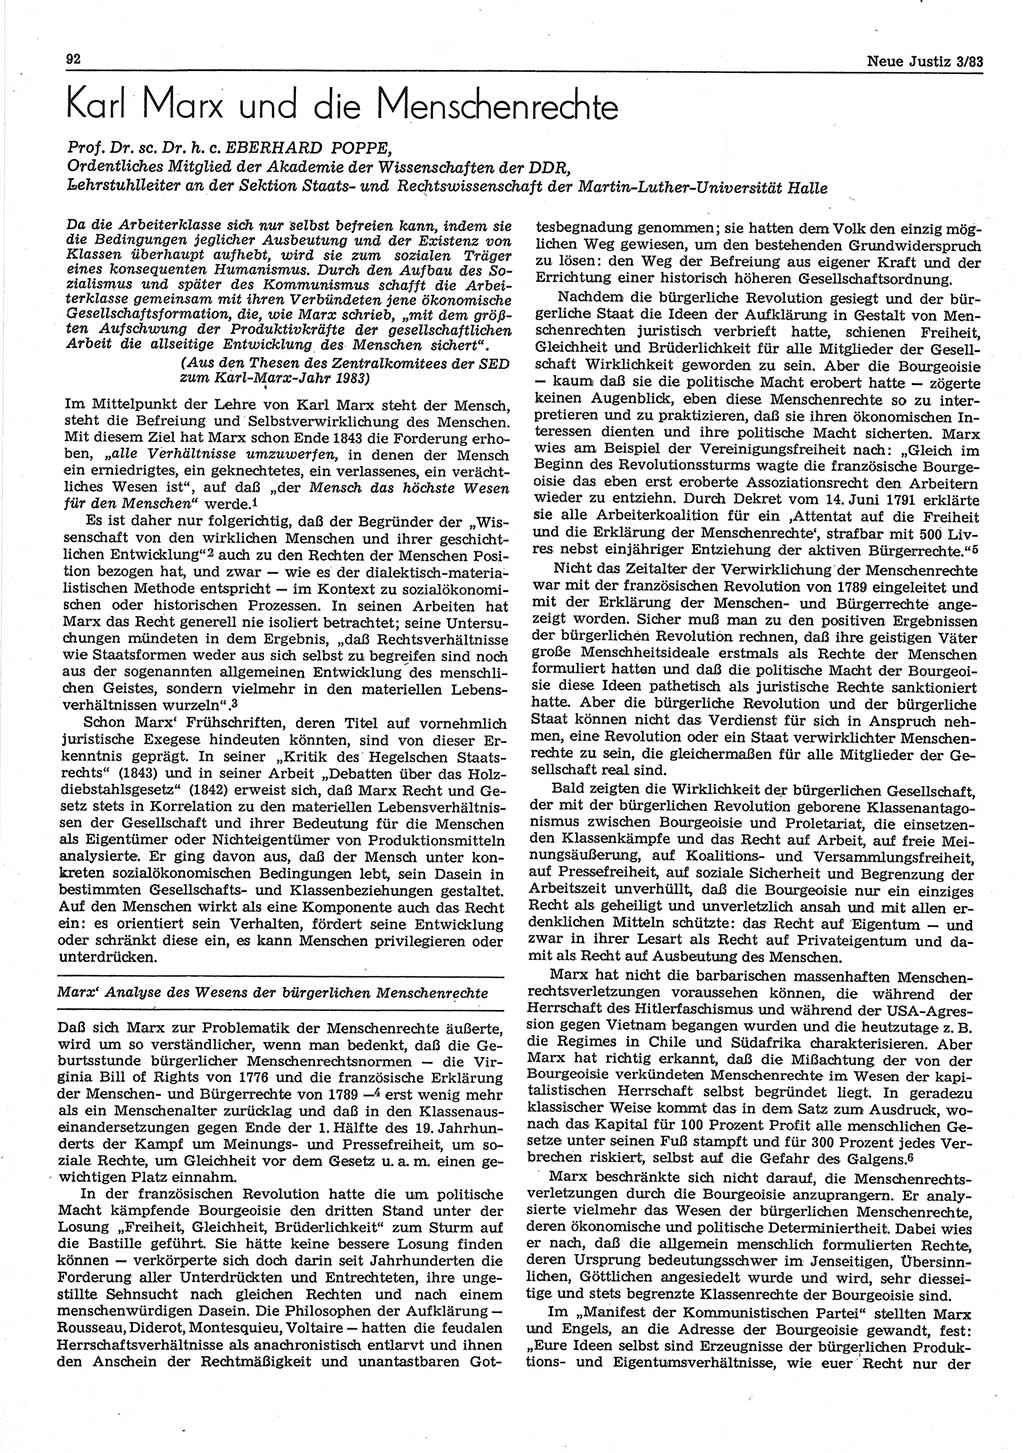 Neue Justiz (NJ), Zeitschrift für sozialistisches Recht und Gesetzlichkeit [Deutsche Demokratische Republik (DDR)], 37. Jahrgang 1983, Seite 92 (NJ DDR 1983, S. 92)